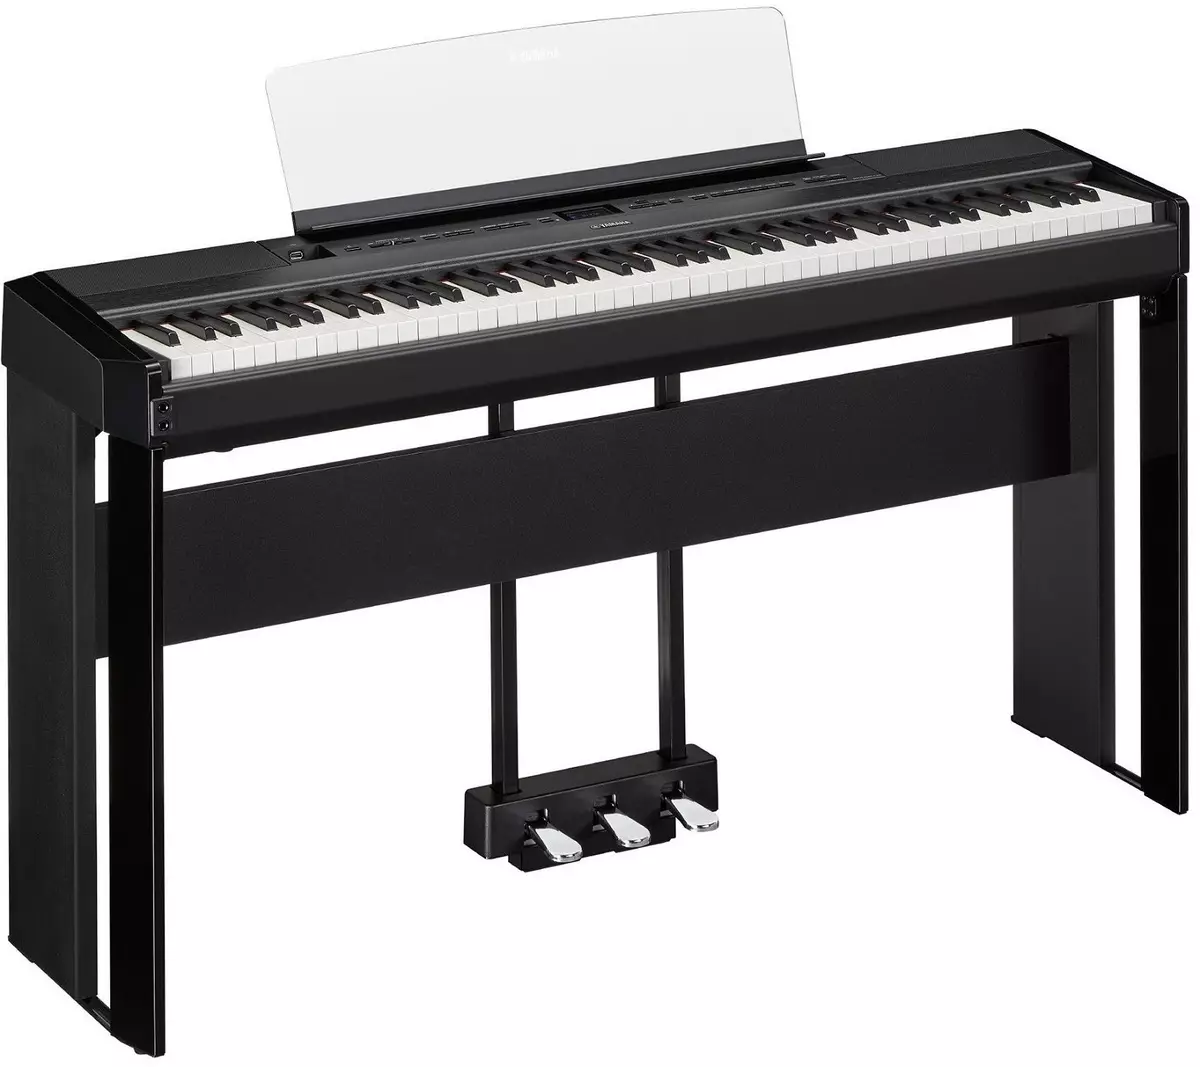 Електричне піаніно: розміри фортепіано і та його особливості, критерії вибору і особливості гри 25414_16